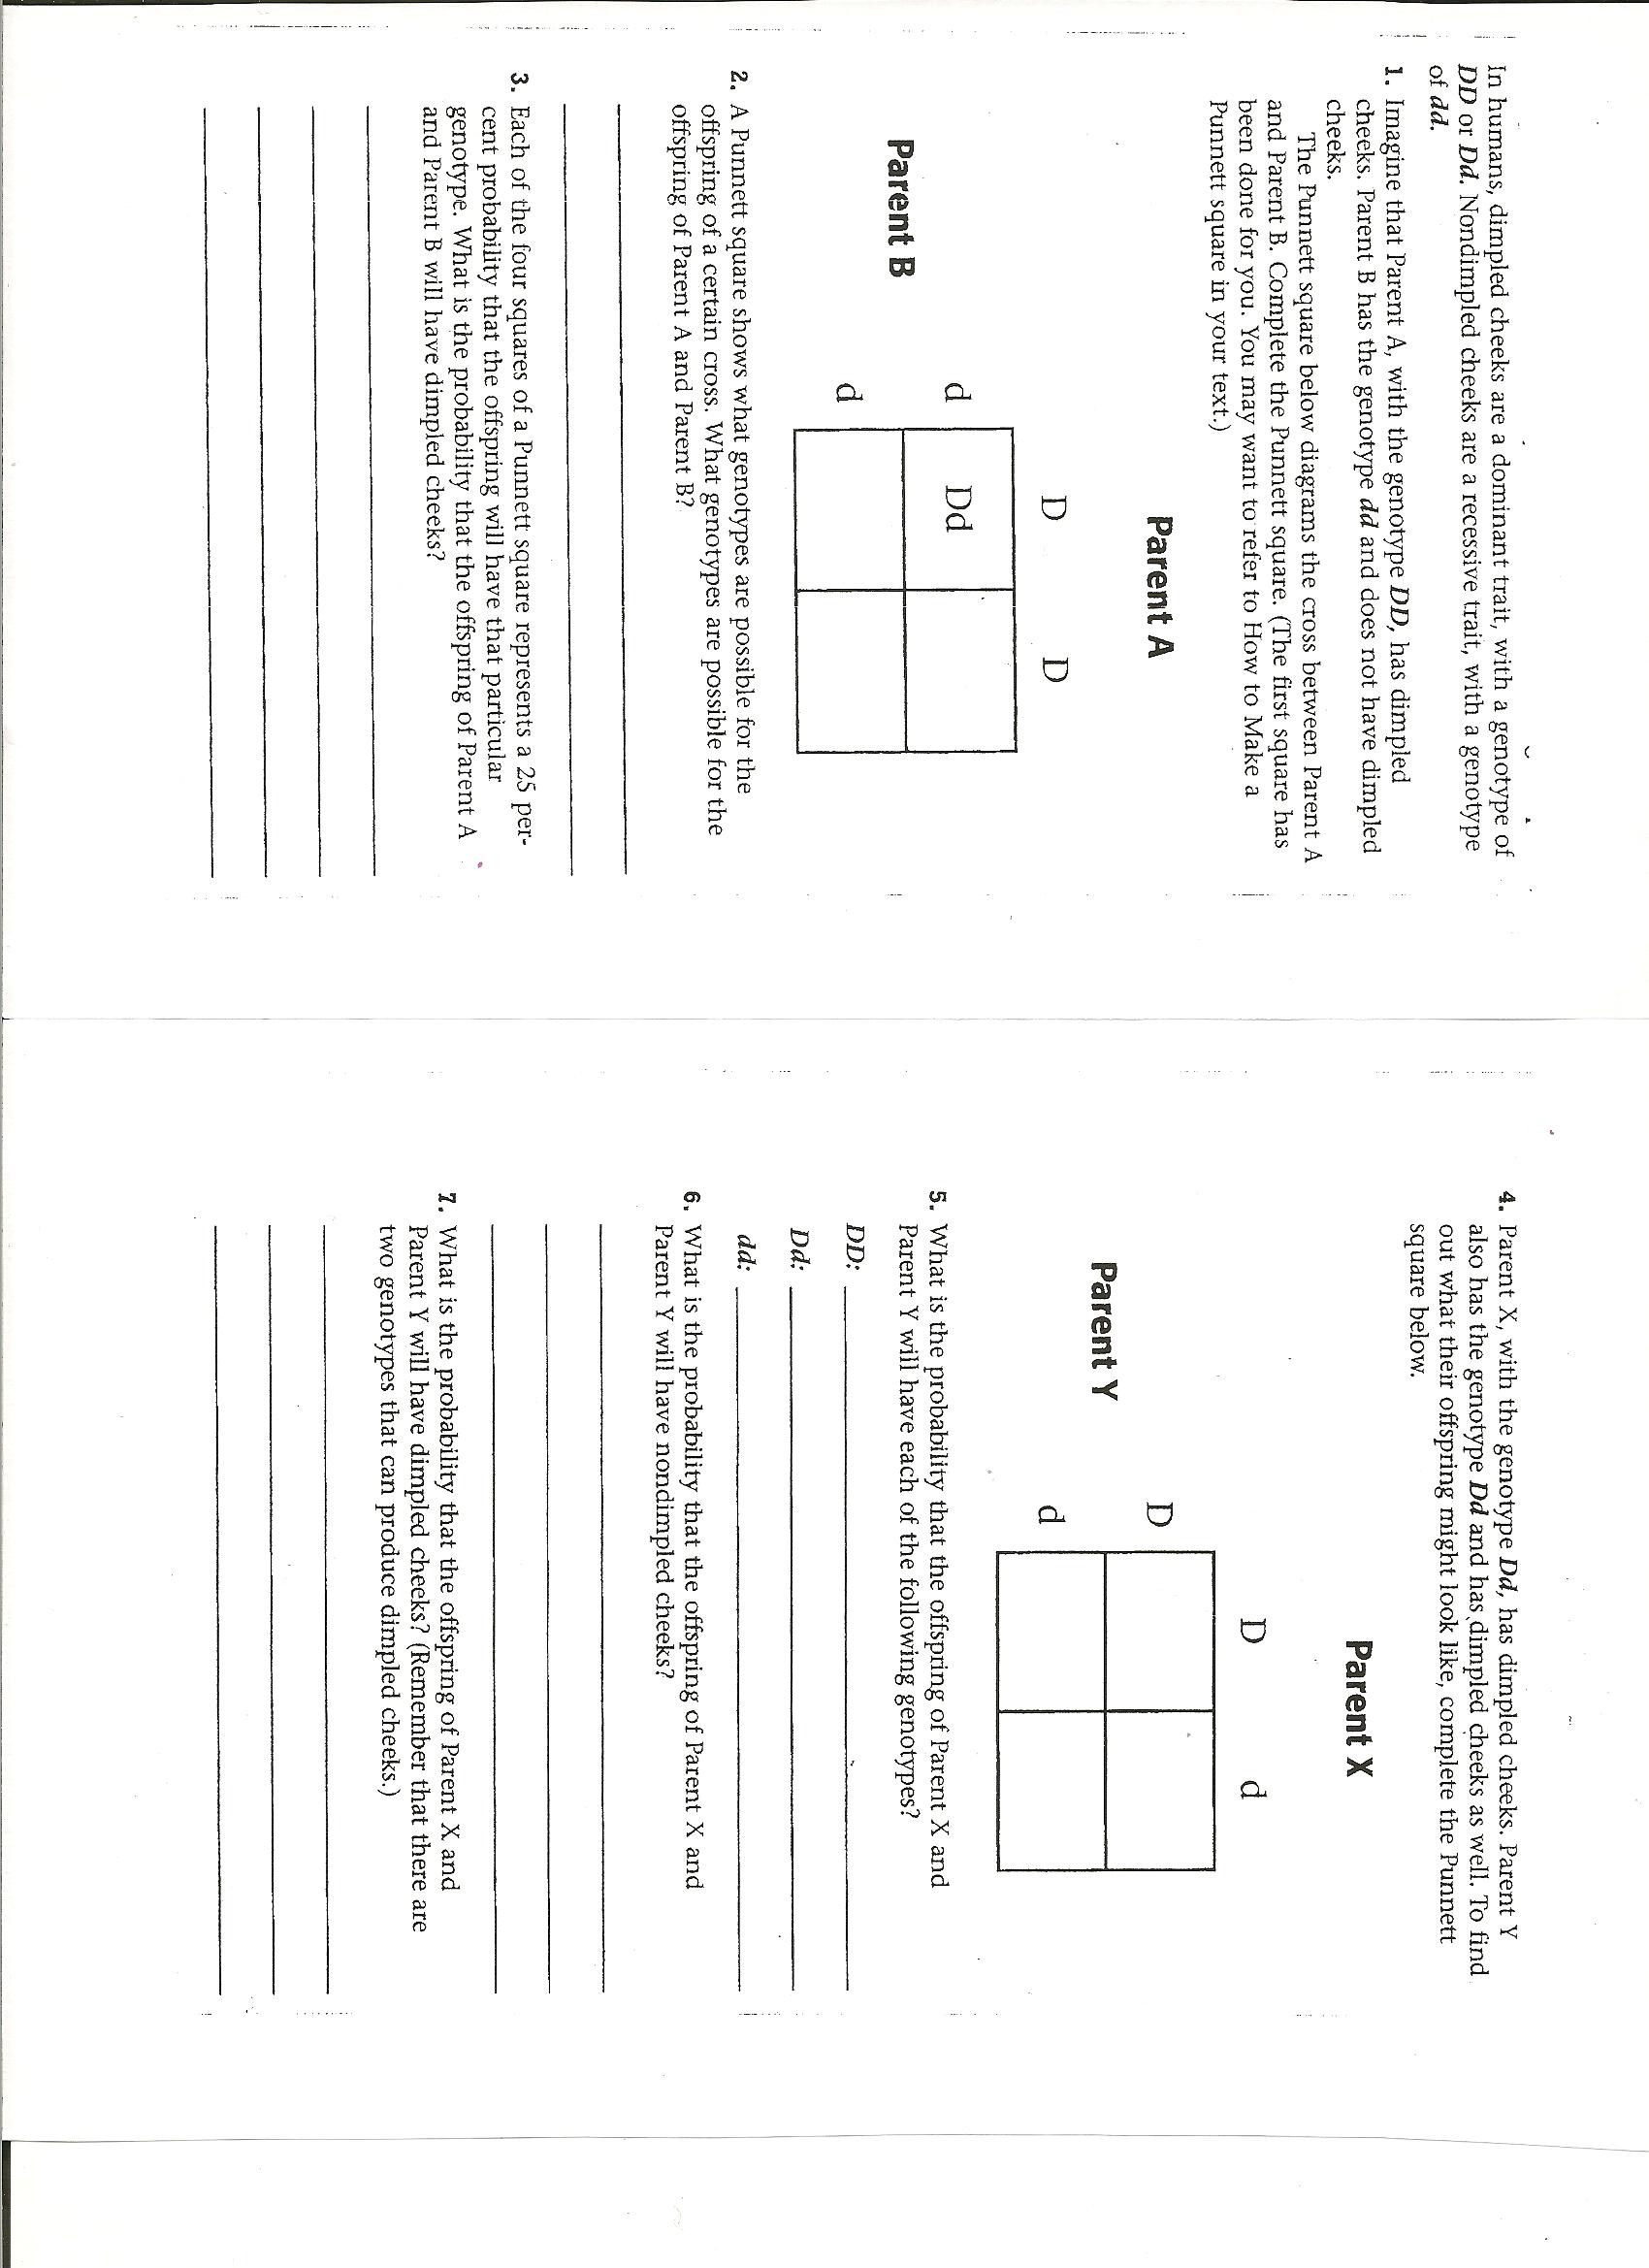 Genetics Practice Problems Simple Worksheet Worksheet Punnett Square Practice Worksheet Hunterhq Free